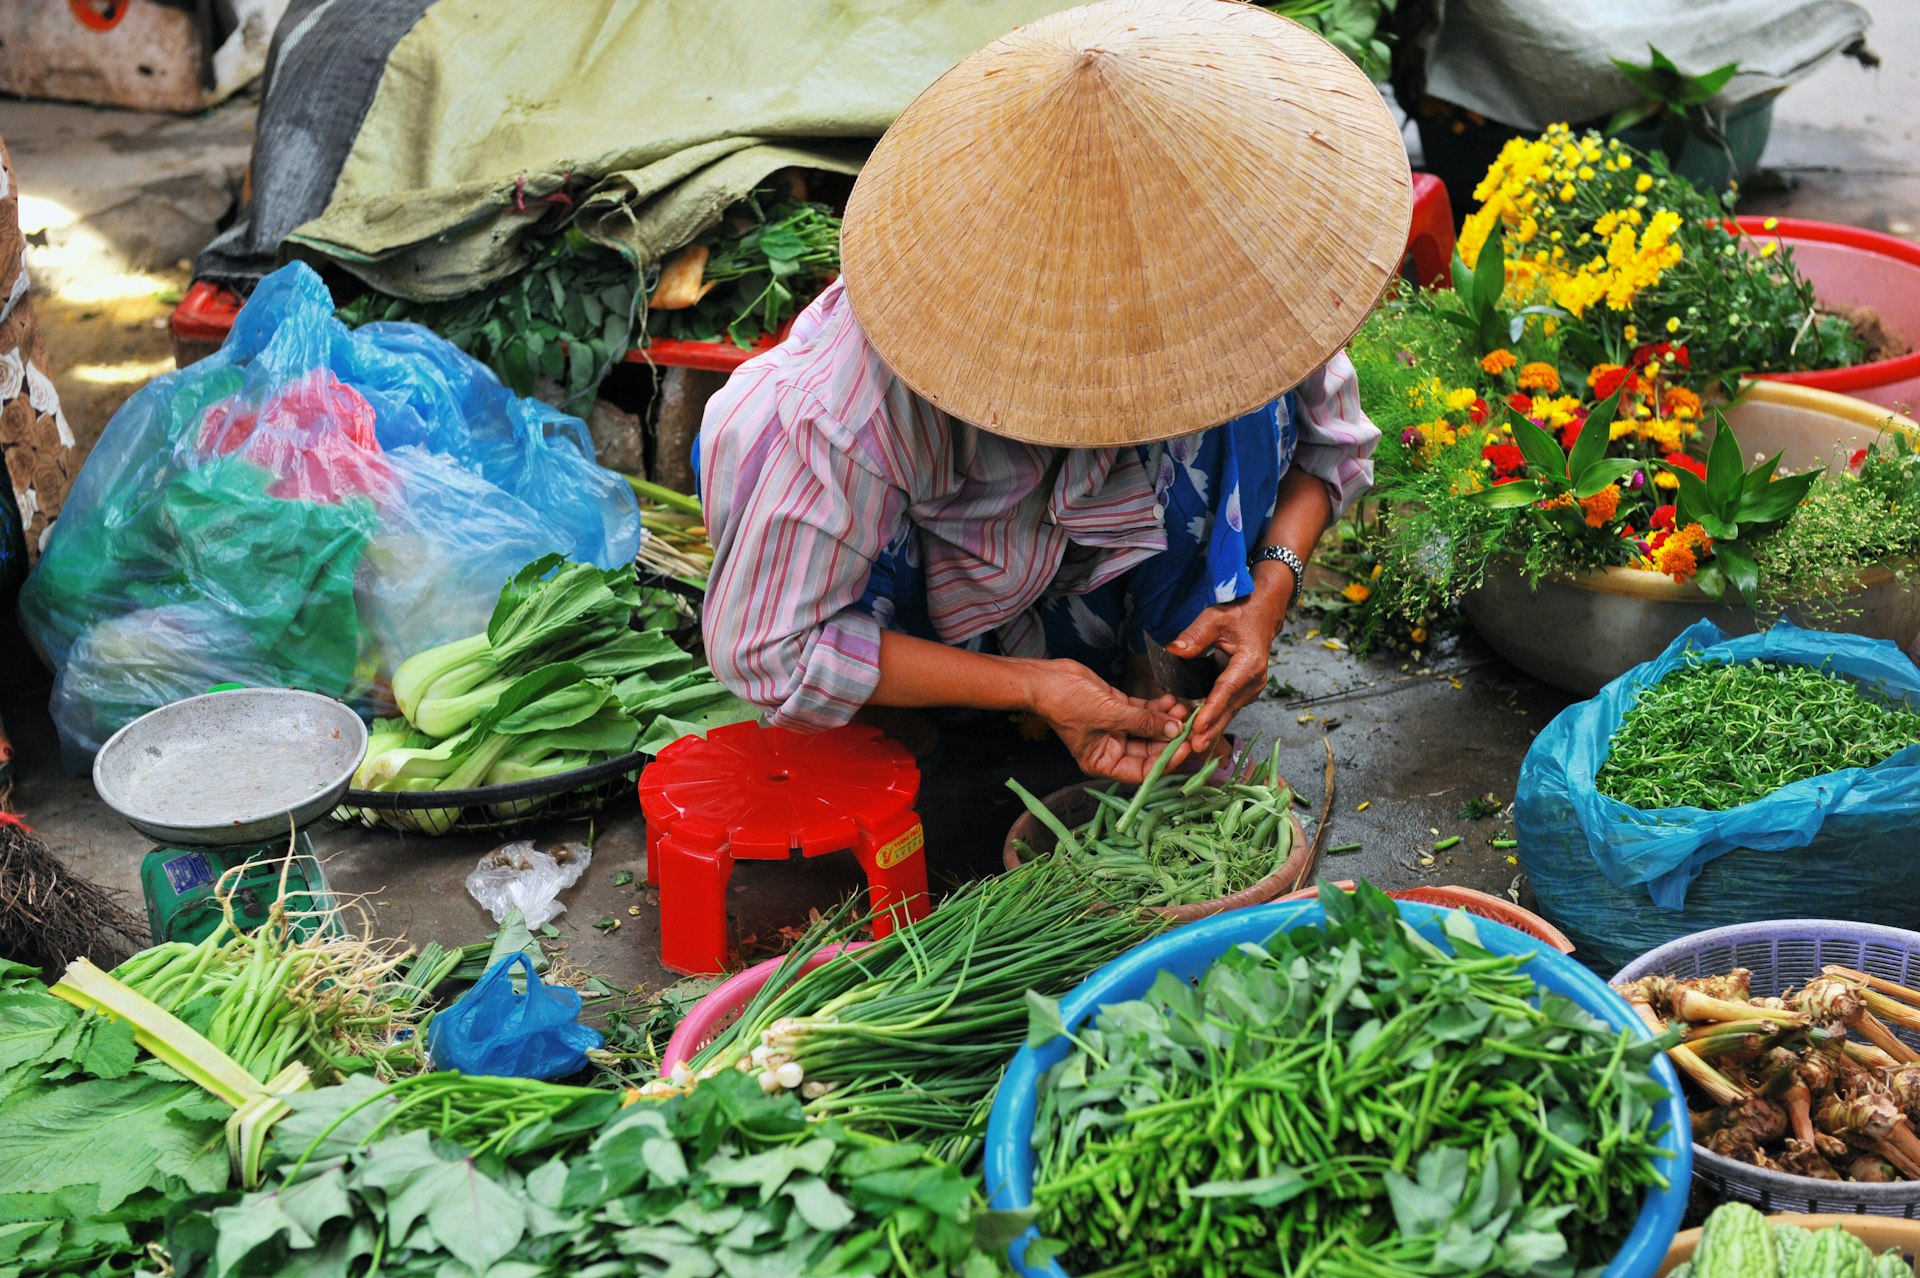 Vietnamese vegetable seller at the market. 